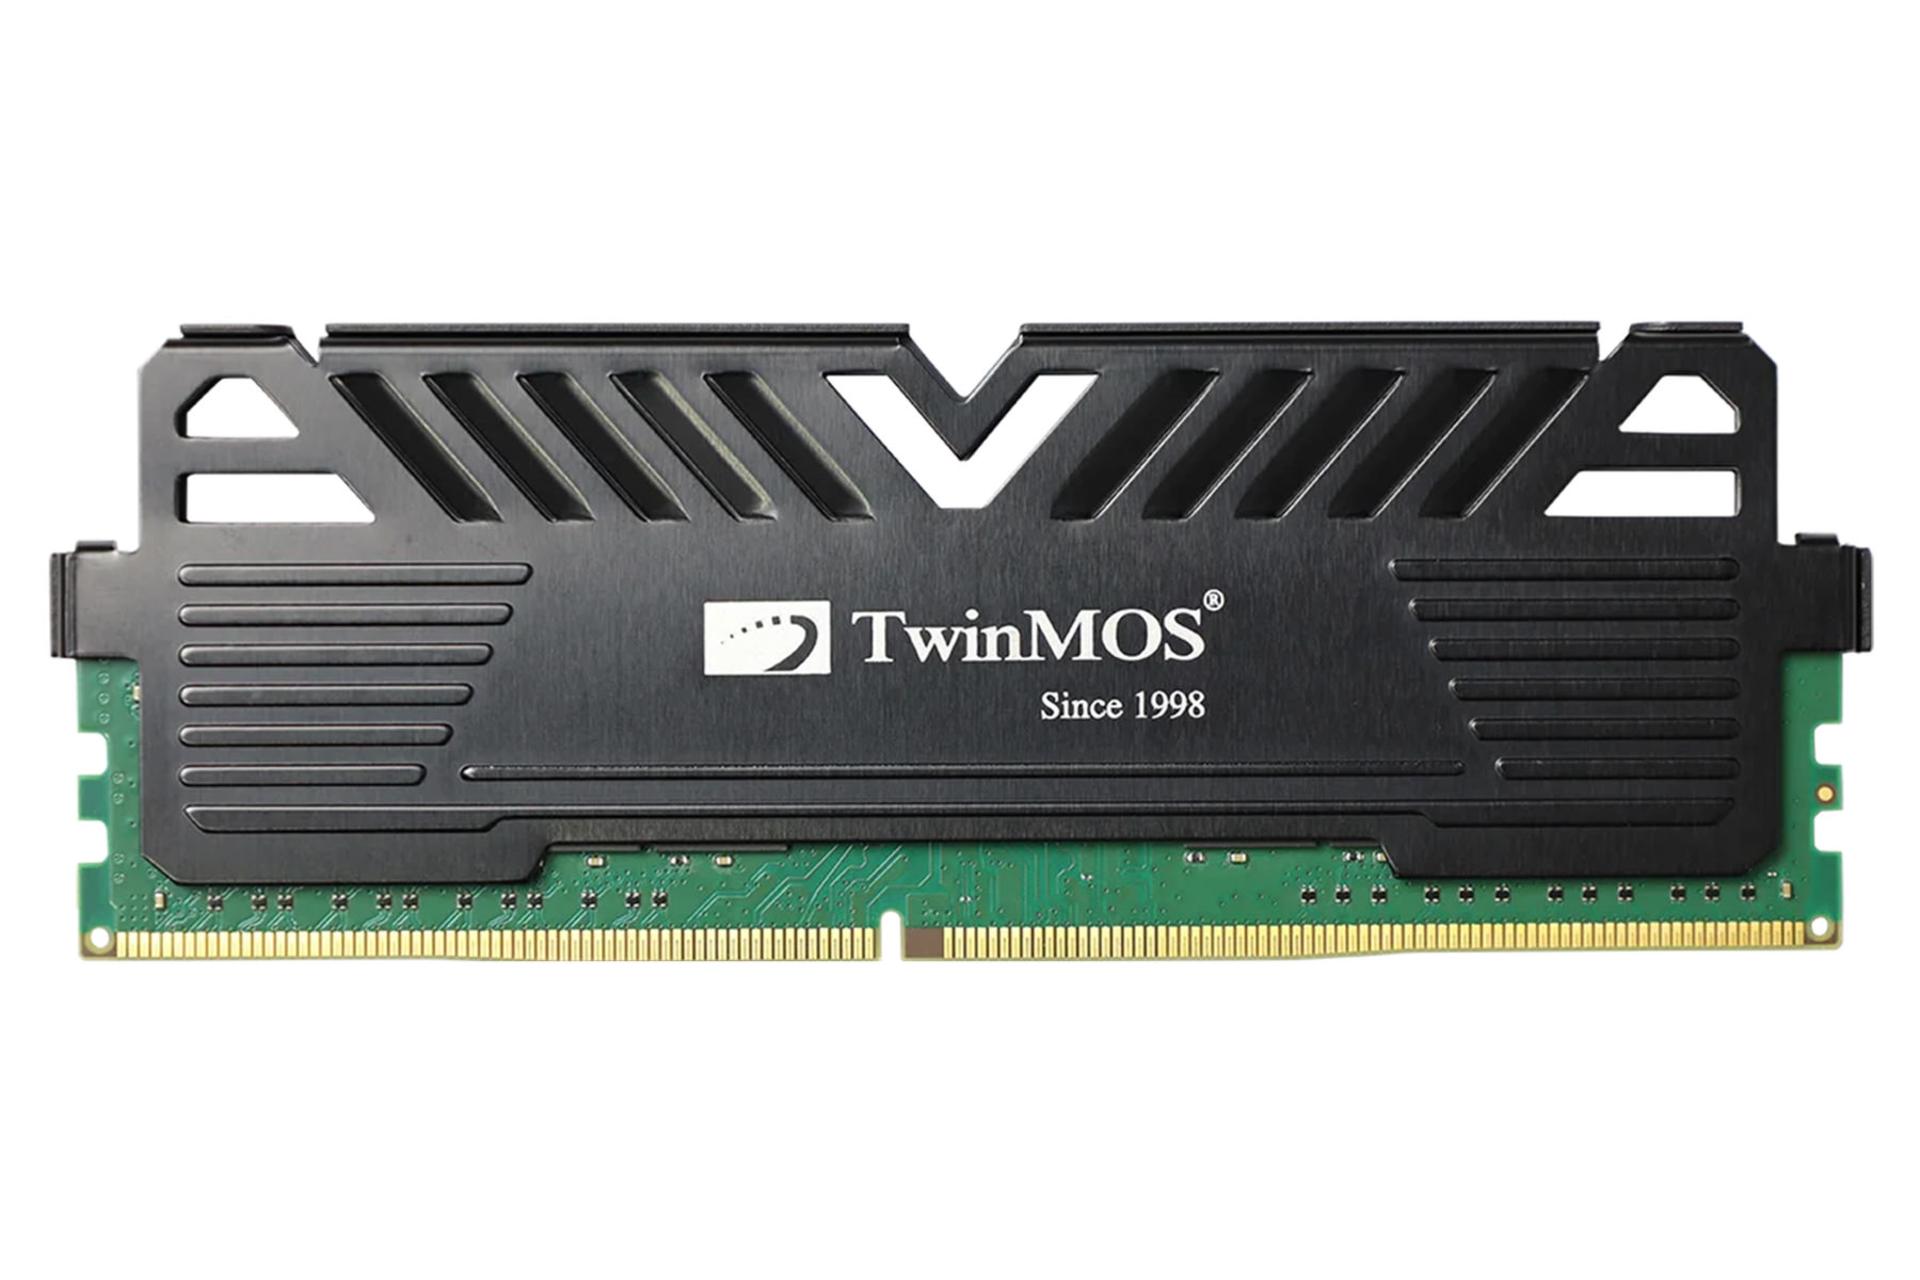 رم توین موس TwinMOS TornadoX6 8GB DDR4-3200 CL22